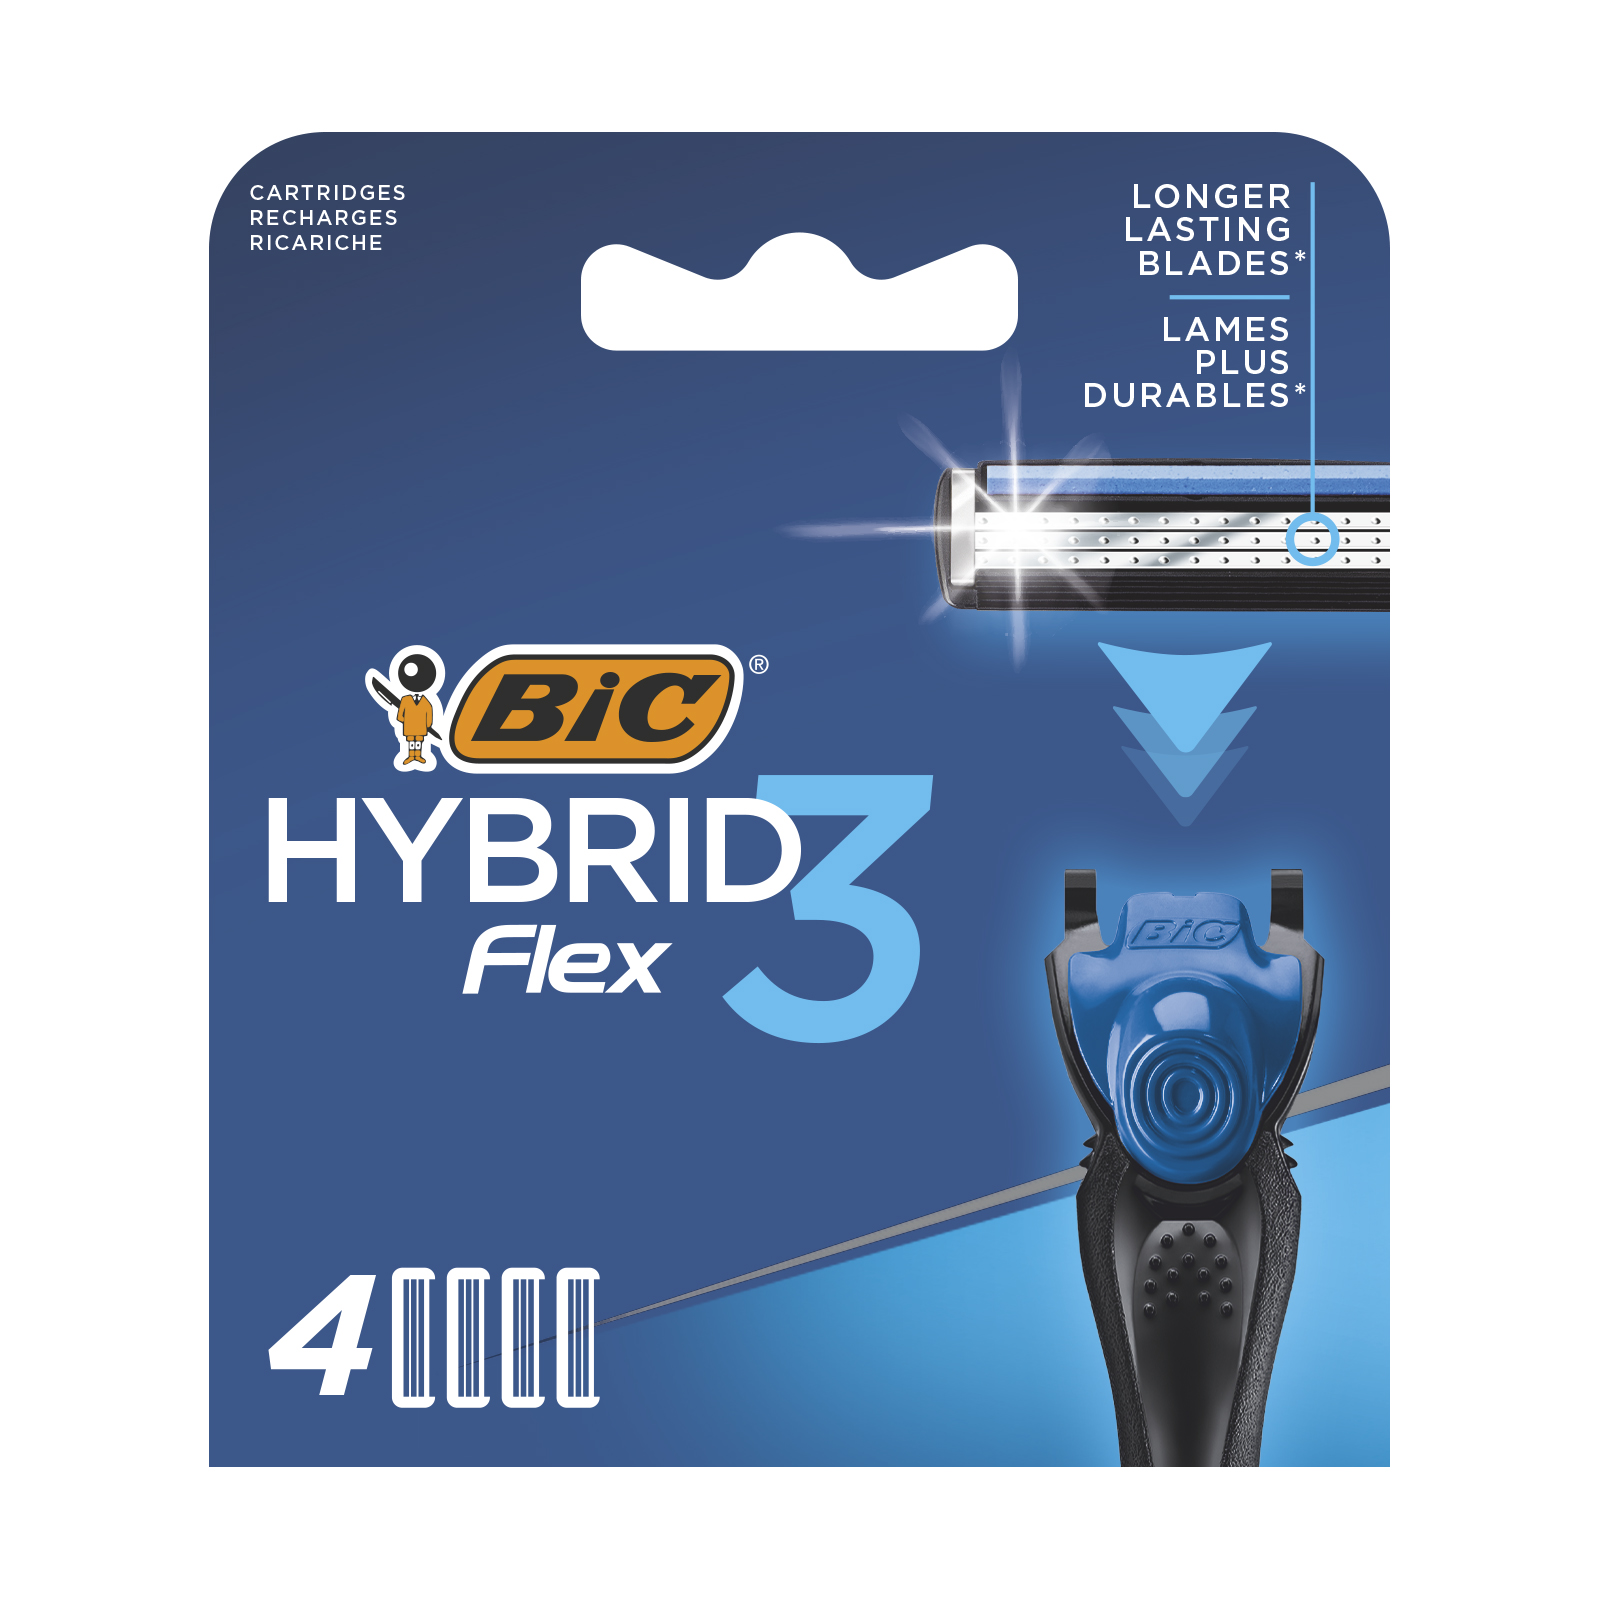 Змінні картриджі для гоління BIC Hybrid 3 Flex, 4 шт. - фото 1